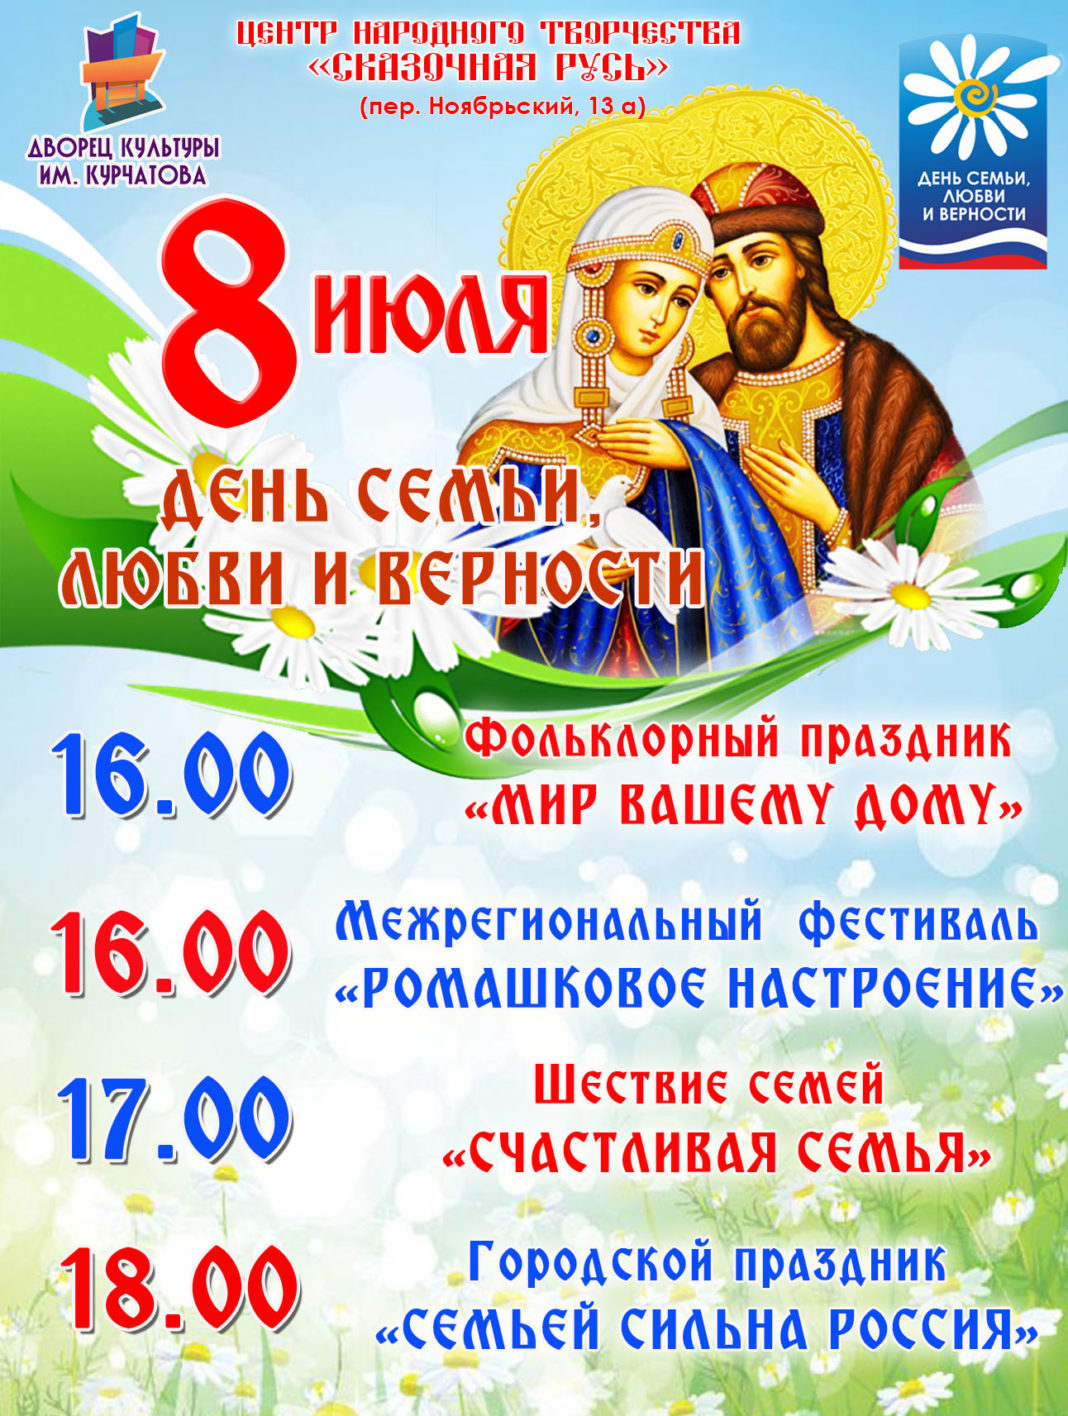 Волгодонцев приглашают на фестиваль «Ромашковое настроение» и шествие семей